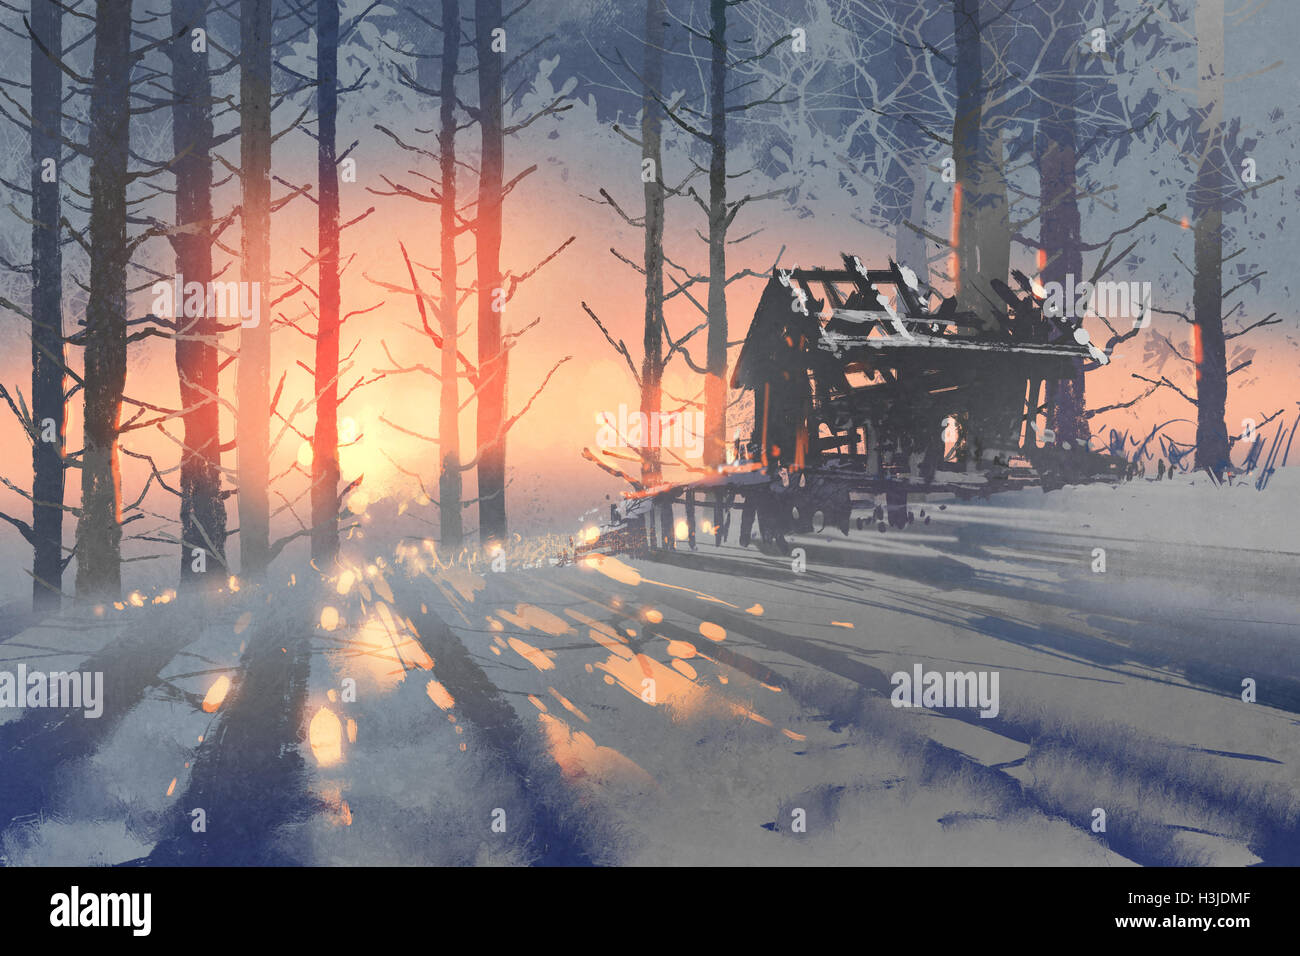 Paysage d'hiver d'une maison abandonnée à dans la forêt,illustration peinture Banque D'Images